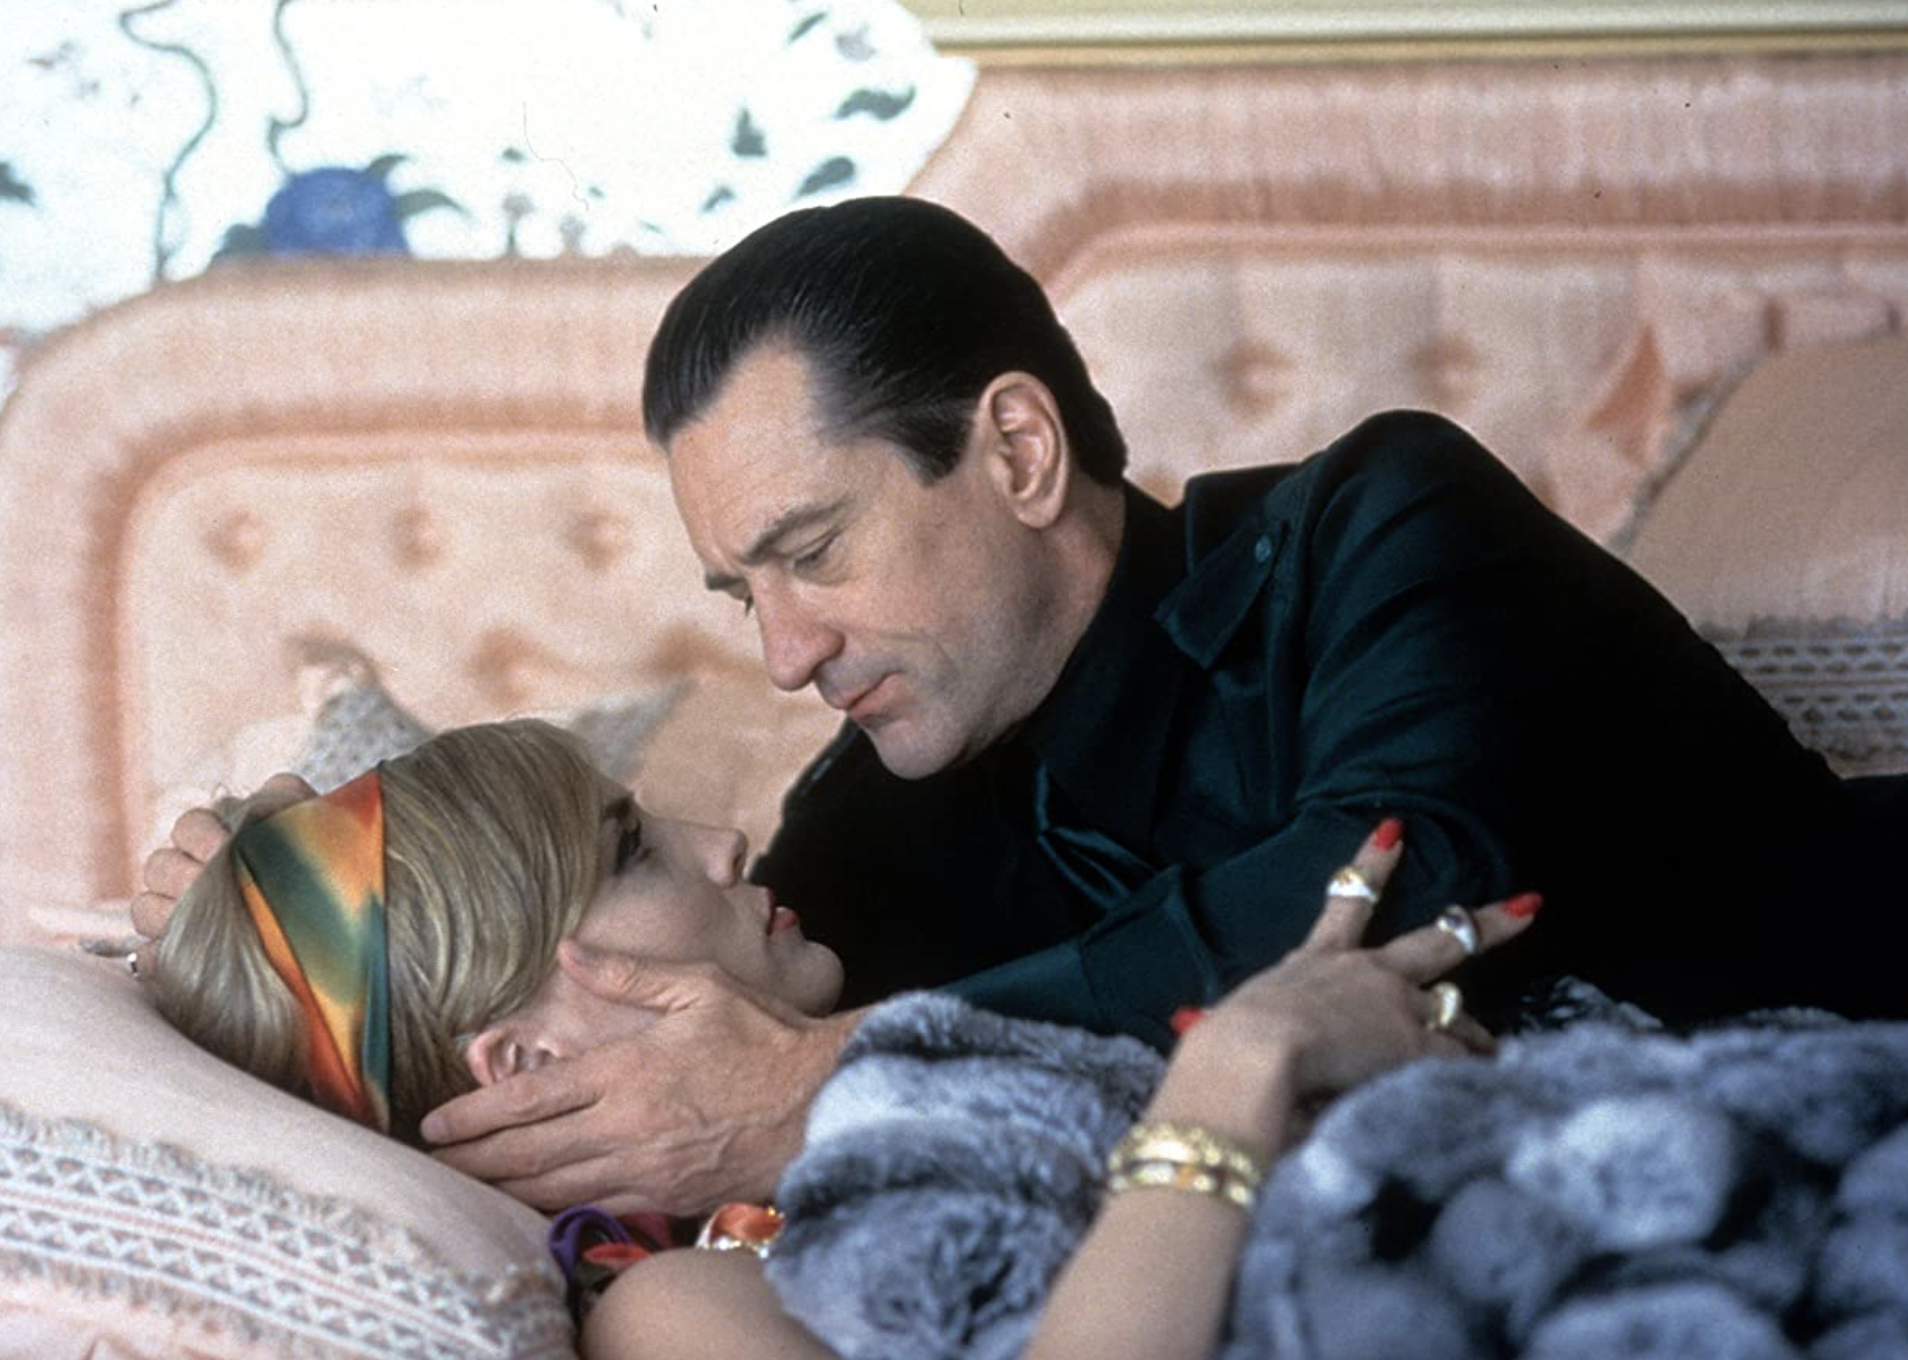 Robert De Niro and Sharon Stone in "Casino".